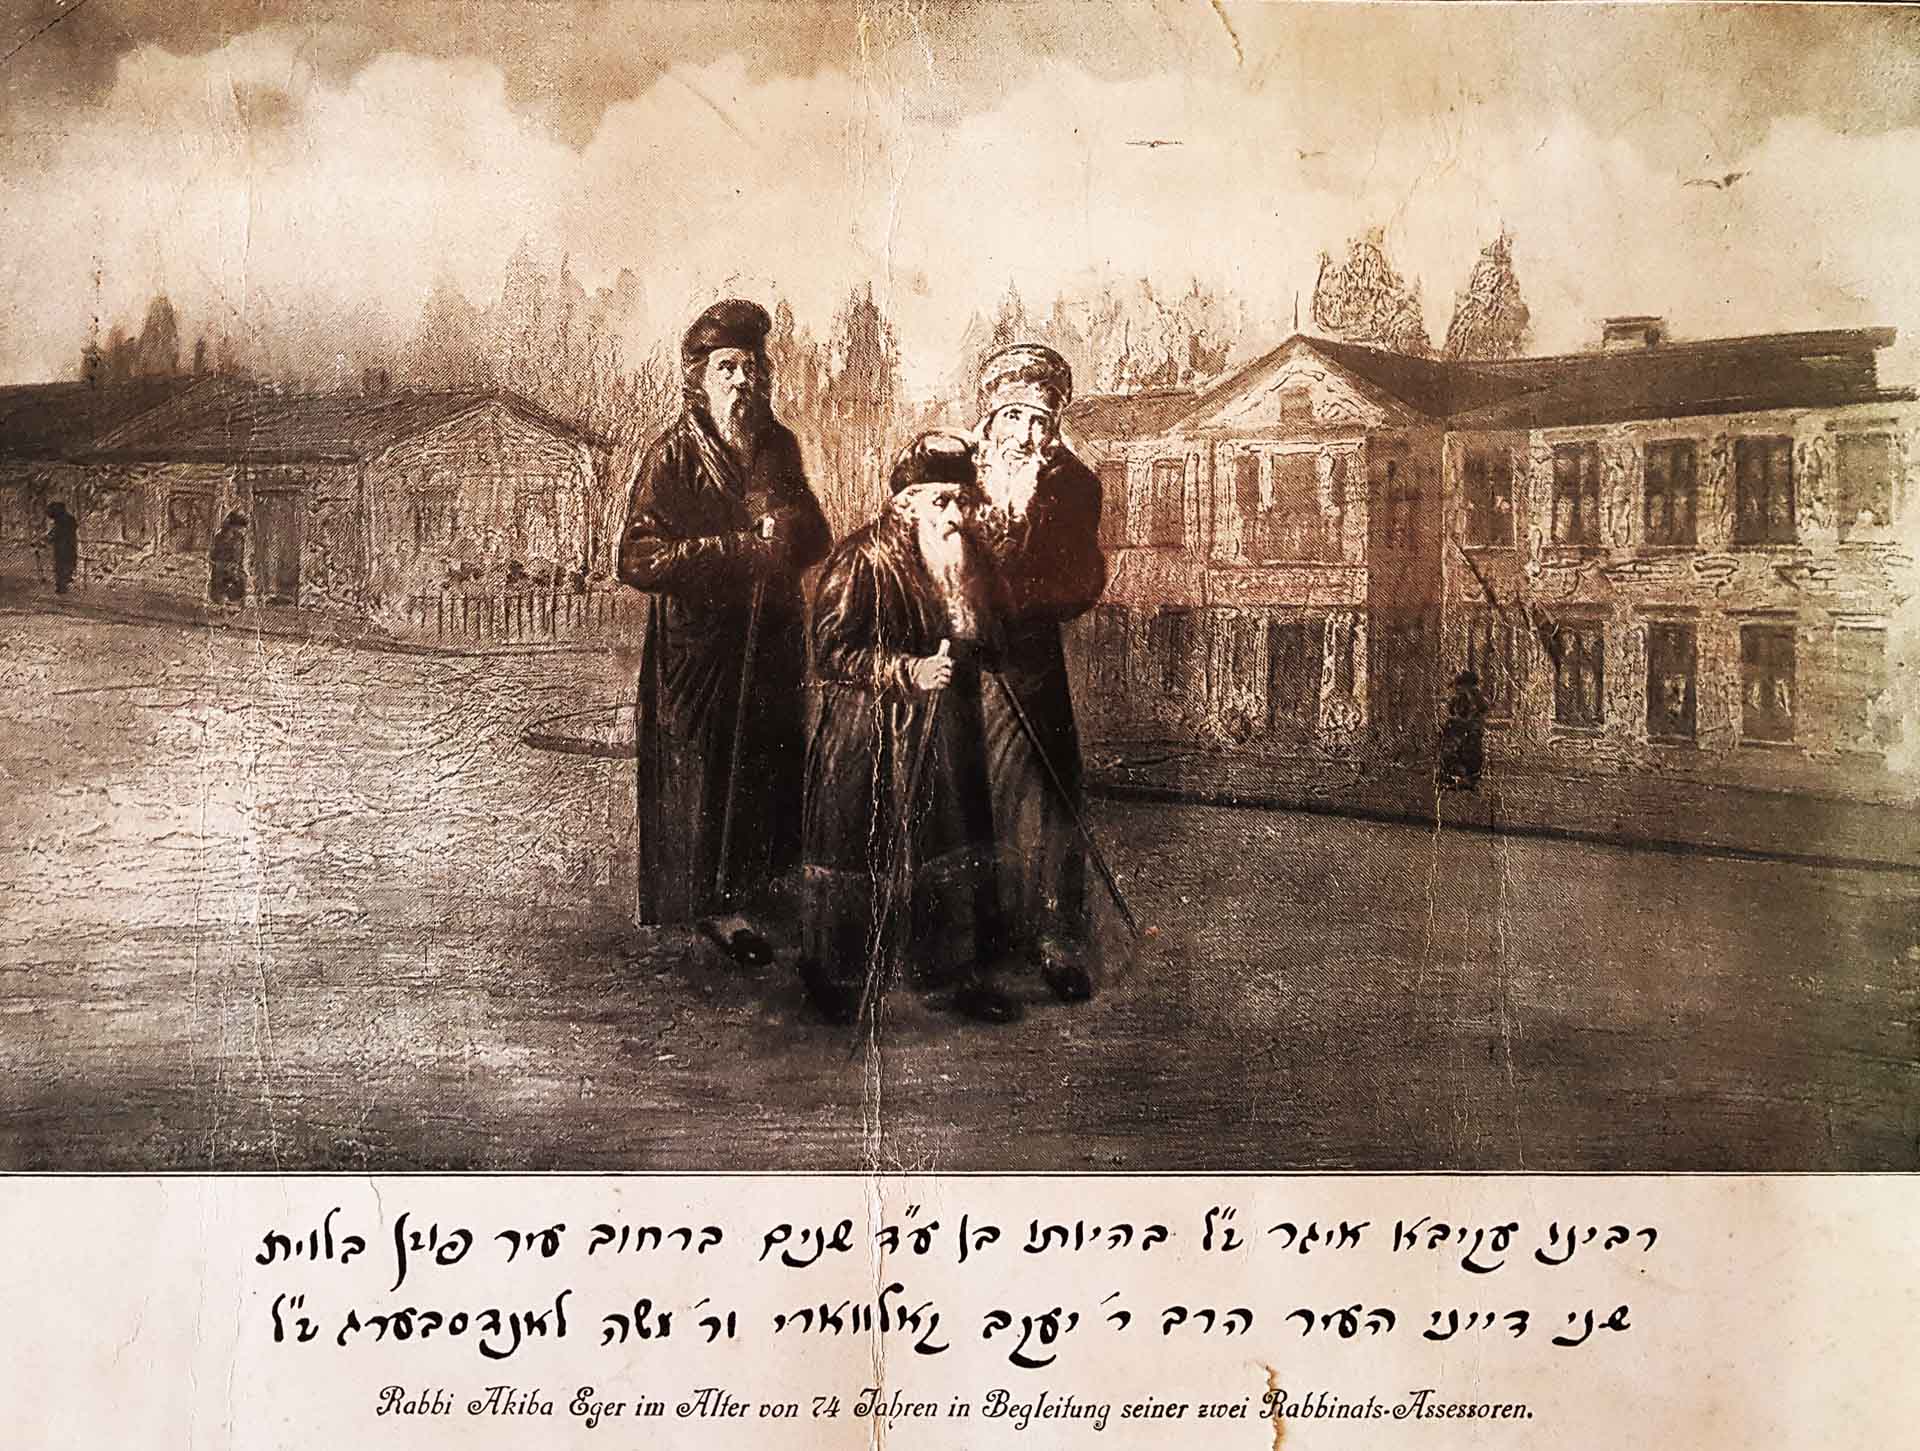 Rabin Akiwa Eger w towarzystwie dwóch poznańskich Żydów. Fragment obrazu Juliusa Knorra “Rynek poznański w 1838 roku”.